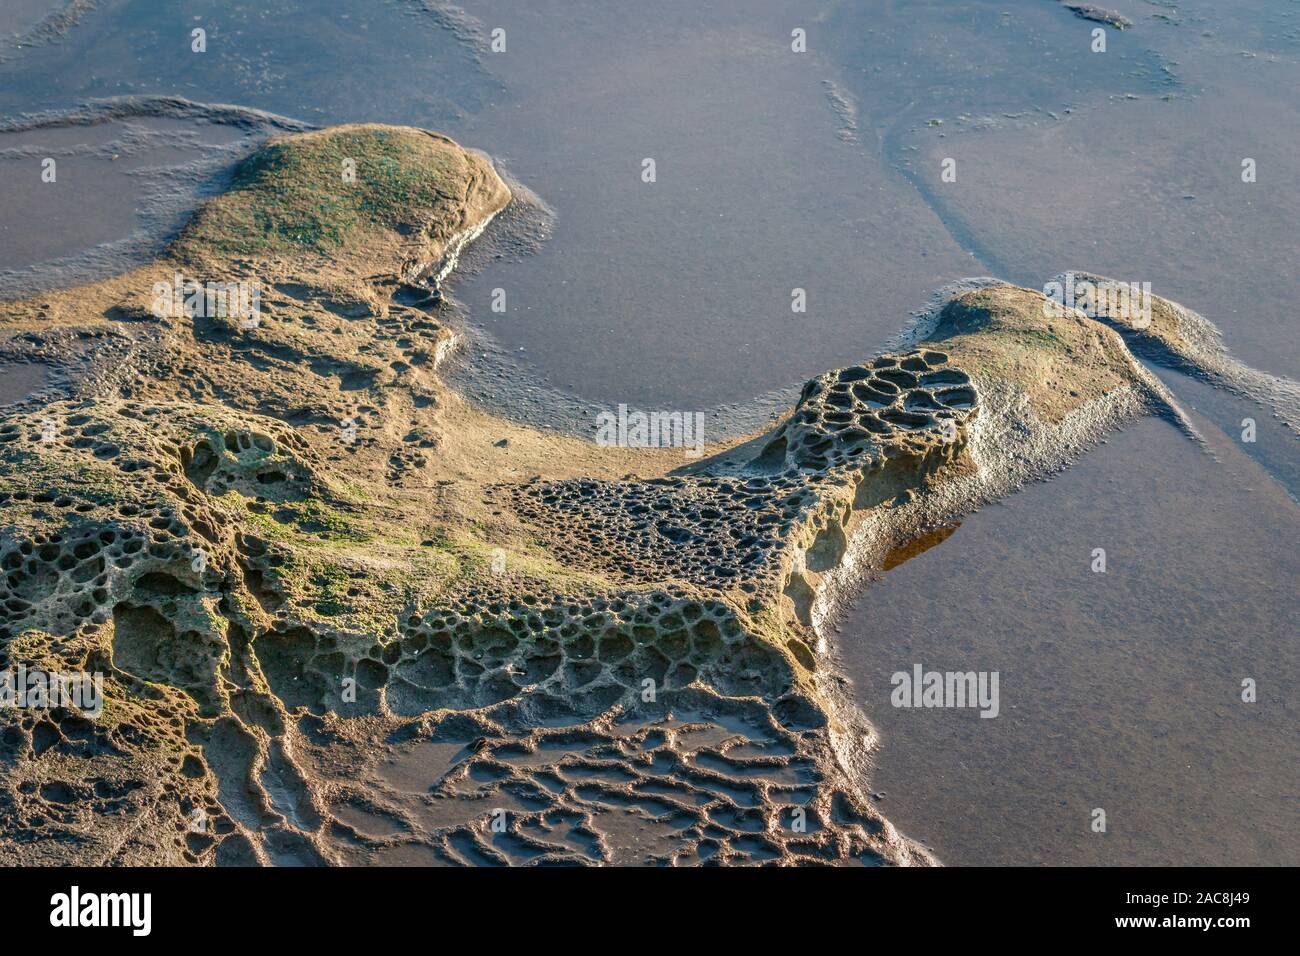 Résumé semi-grès érodé de détail au bord de la mer, sa texture rugueuse contrairement au sable lisse visible au travers de l'eau (Colombie-Britannique). Banque D'Images